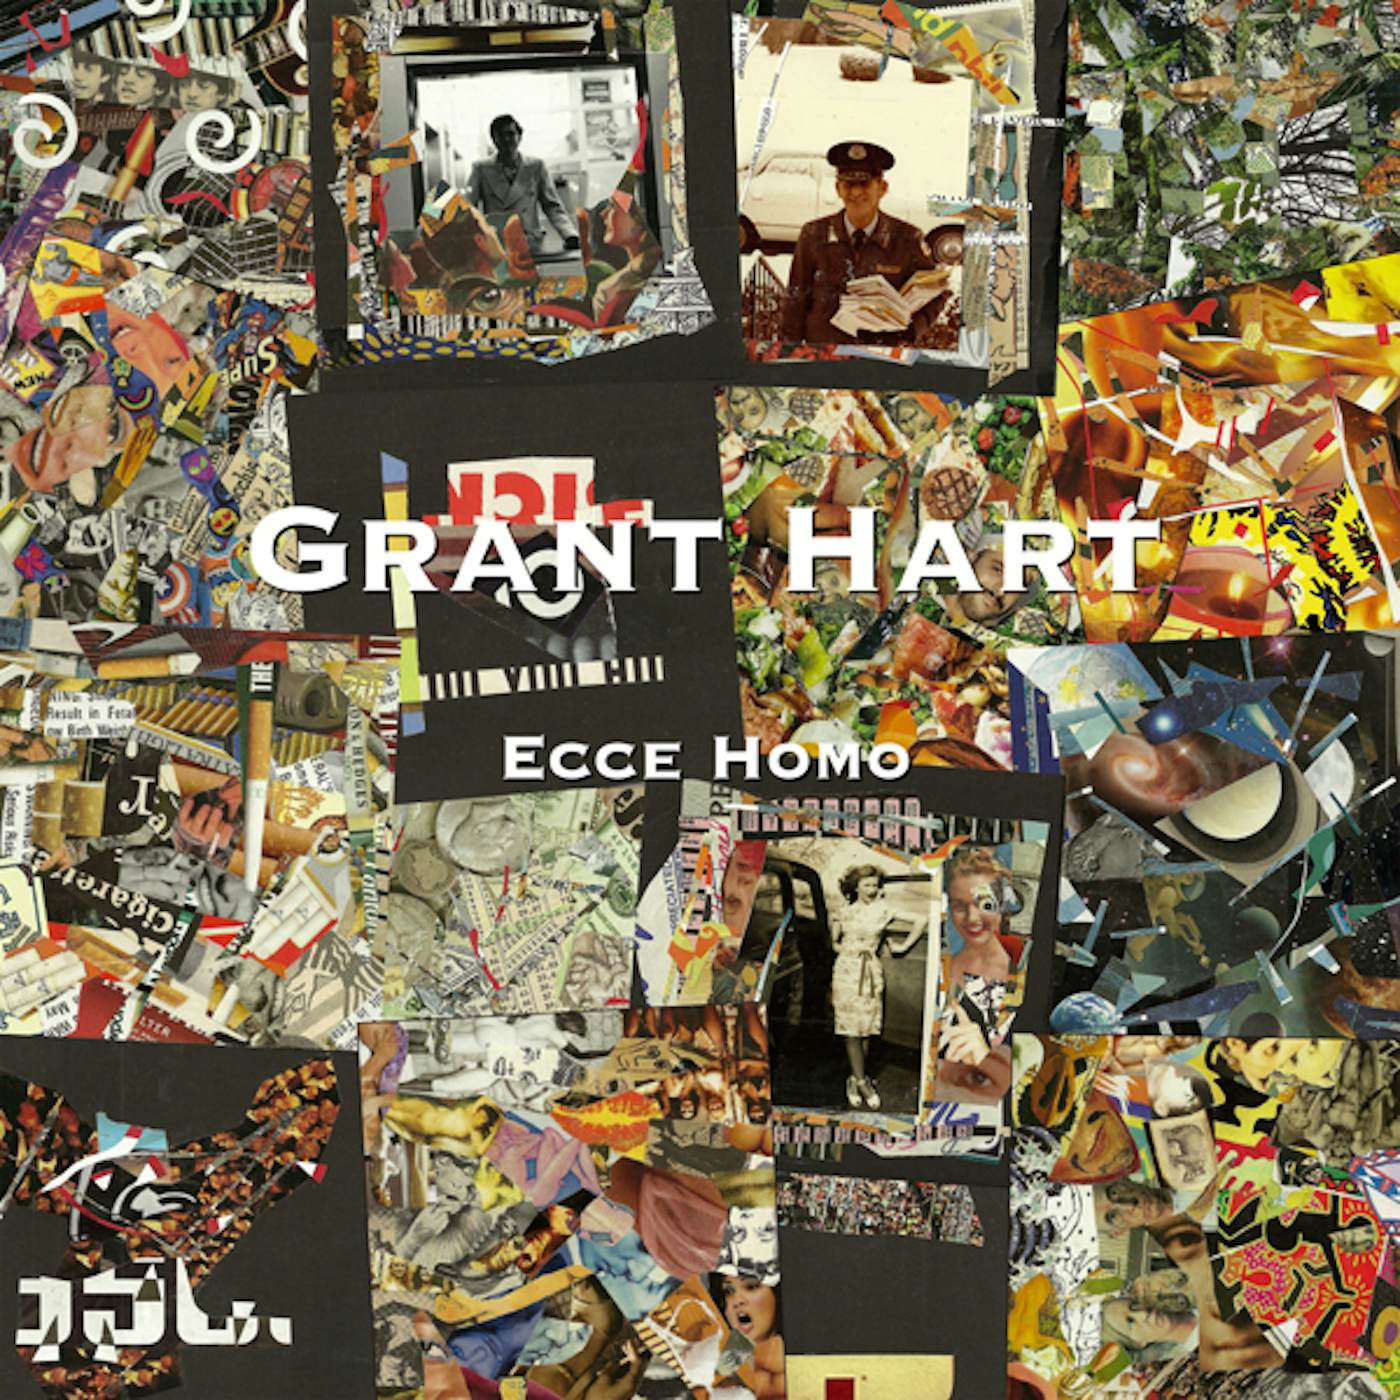 Grant Hart Ecce Homo Vinyl Record